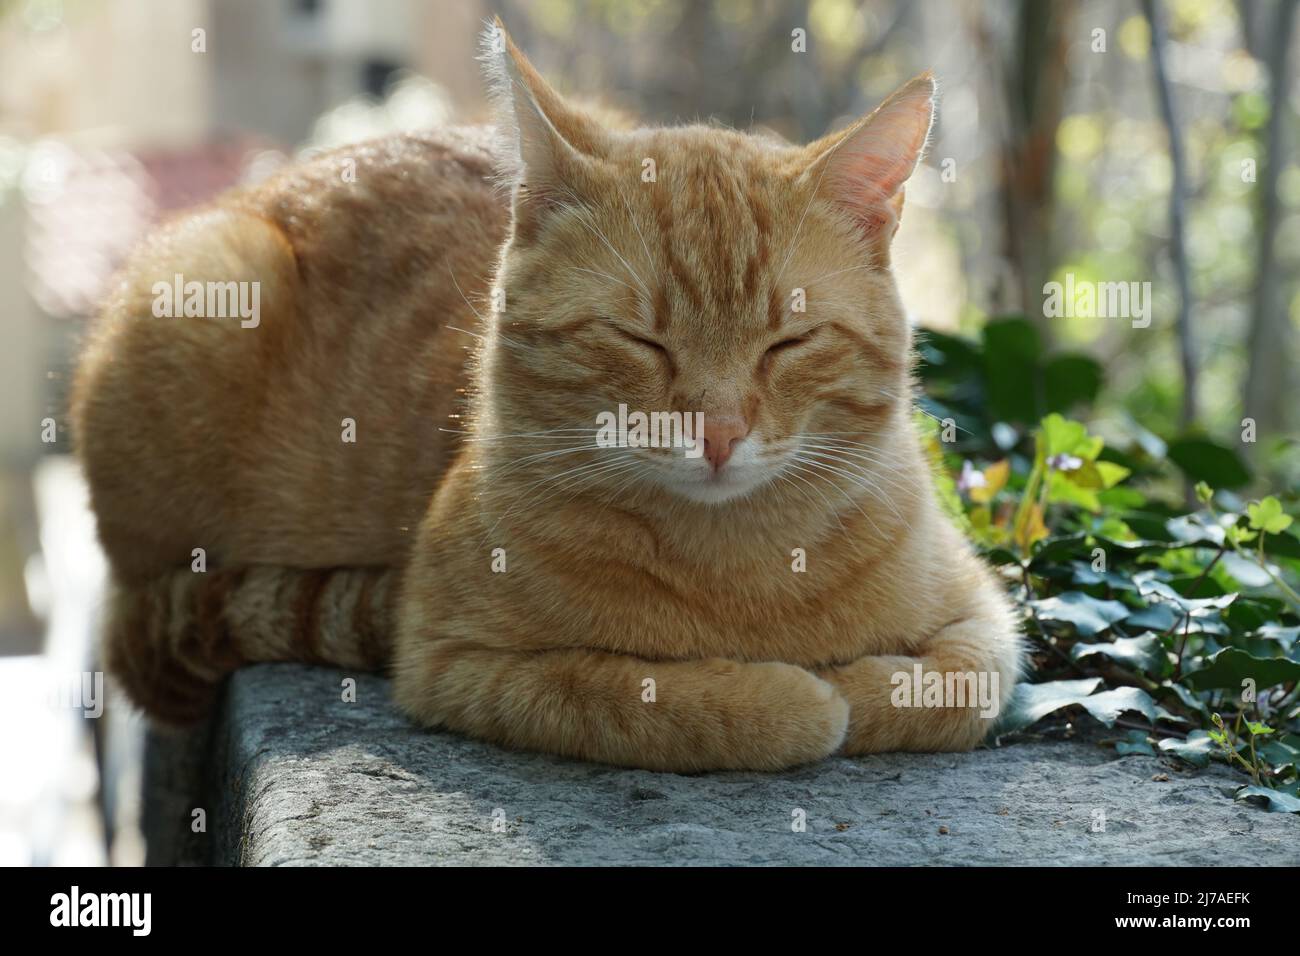 Ritratto di un gatto di zenzero di razza mista. Il gatto è teso fuori, ha occhi connived e gode il caldo sole primaverile. Gatto vagante che riposa nel parco. Foto Stock